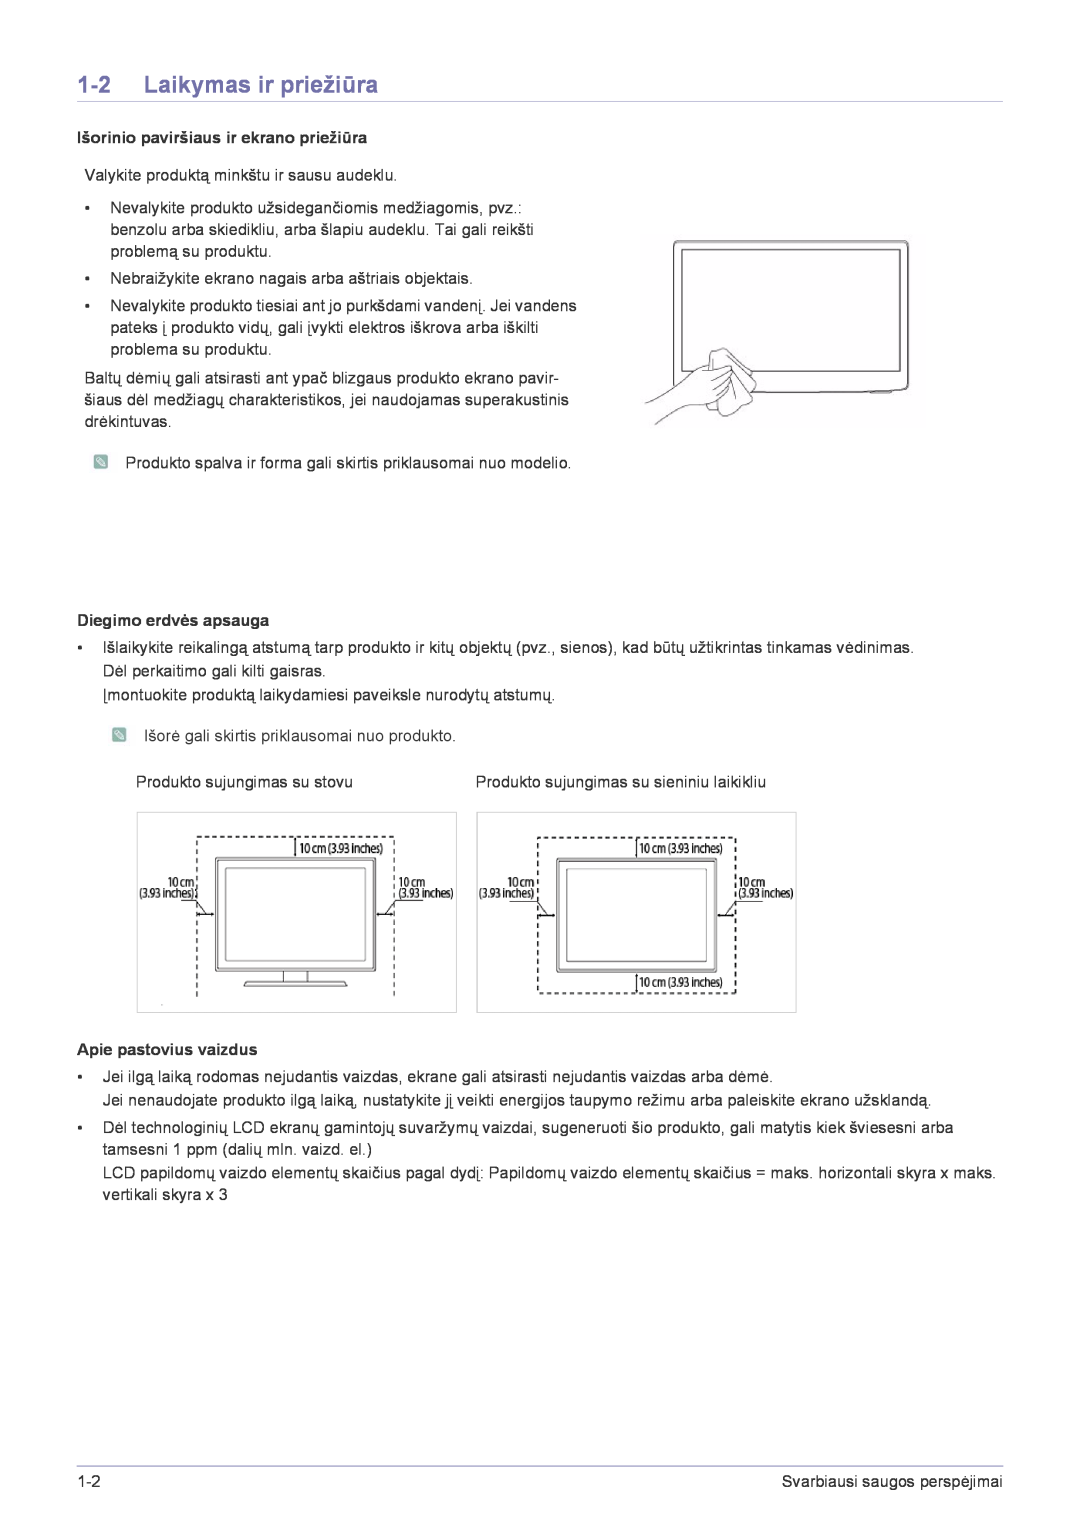 Samsung LS22FMDGF/EN manual Laikymas ir priežiūra, Išorinio paviršiaus ir ekrano priežiūra, Diegimo erdvės apsauga 